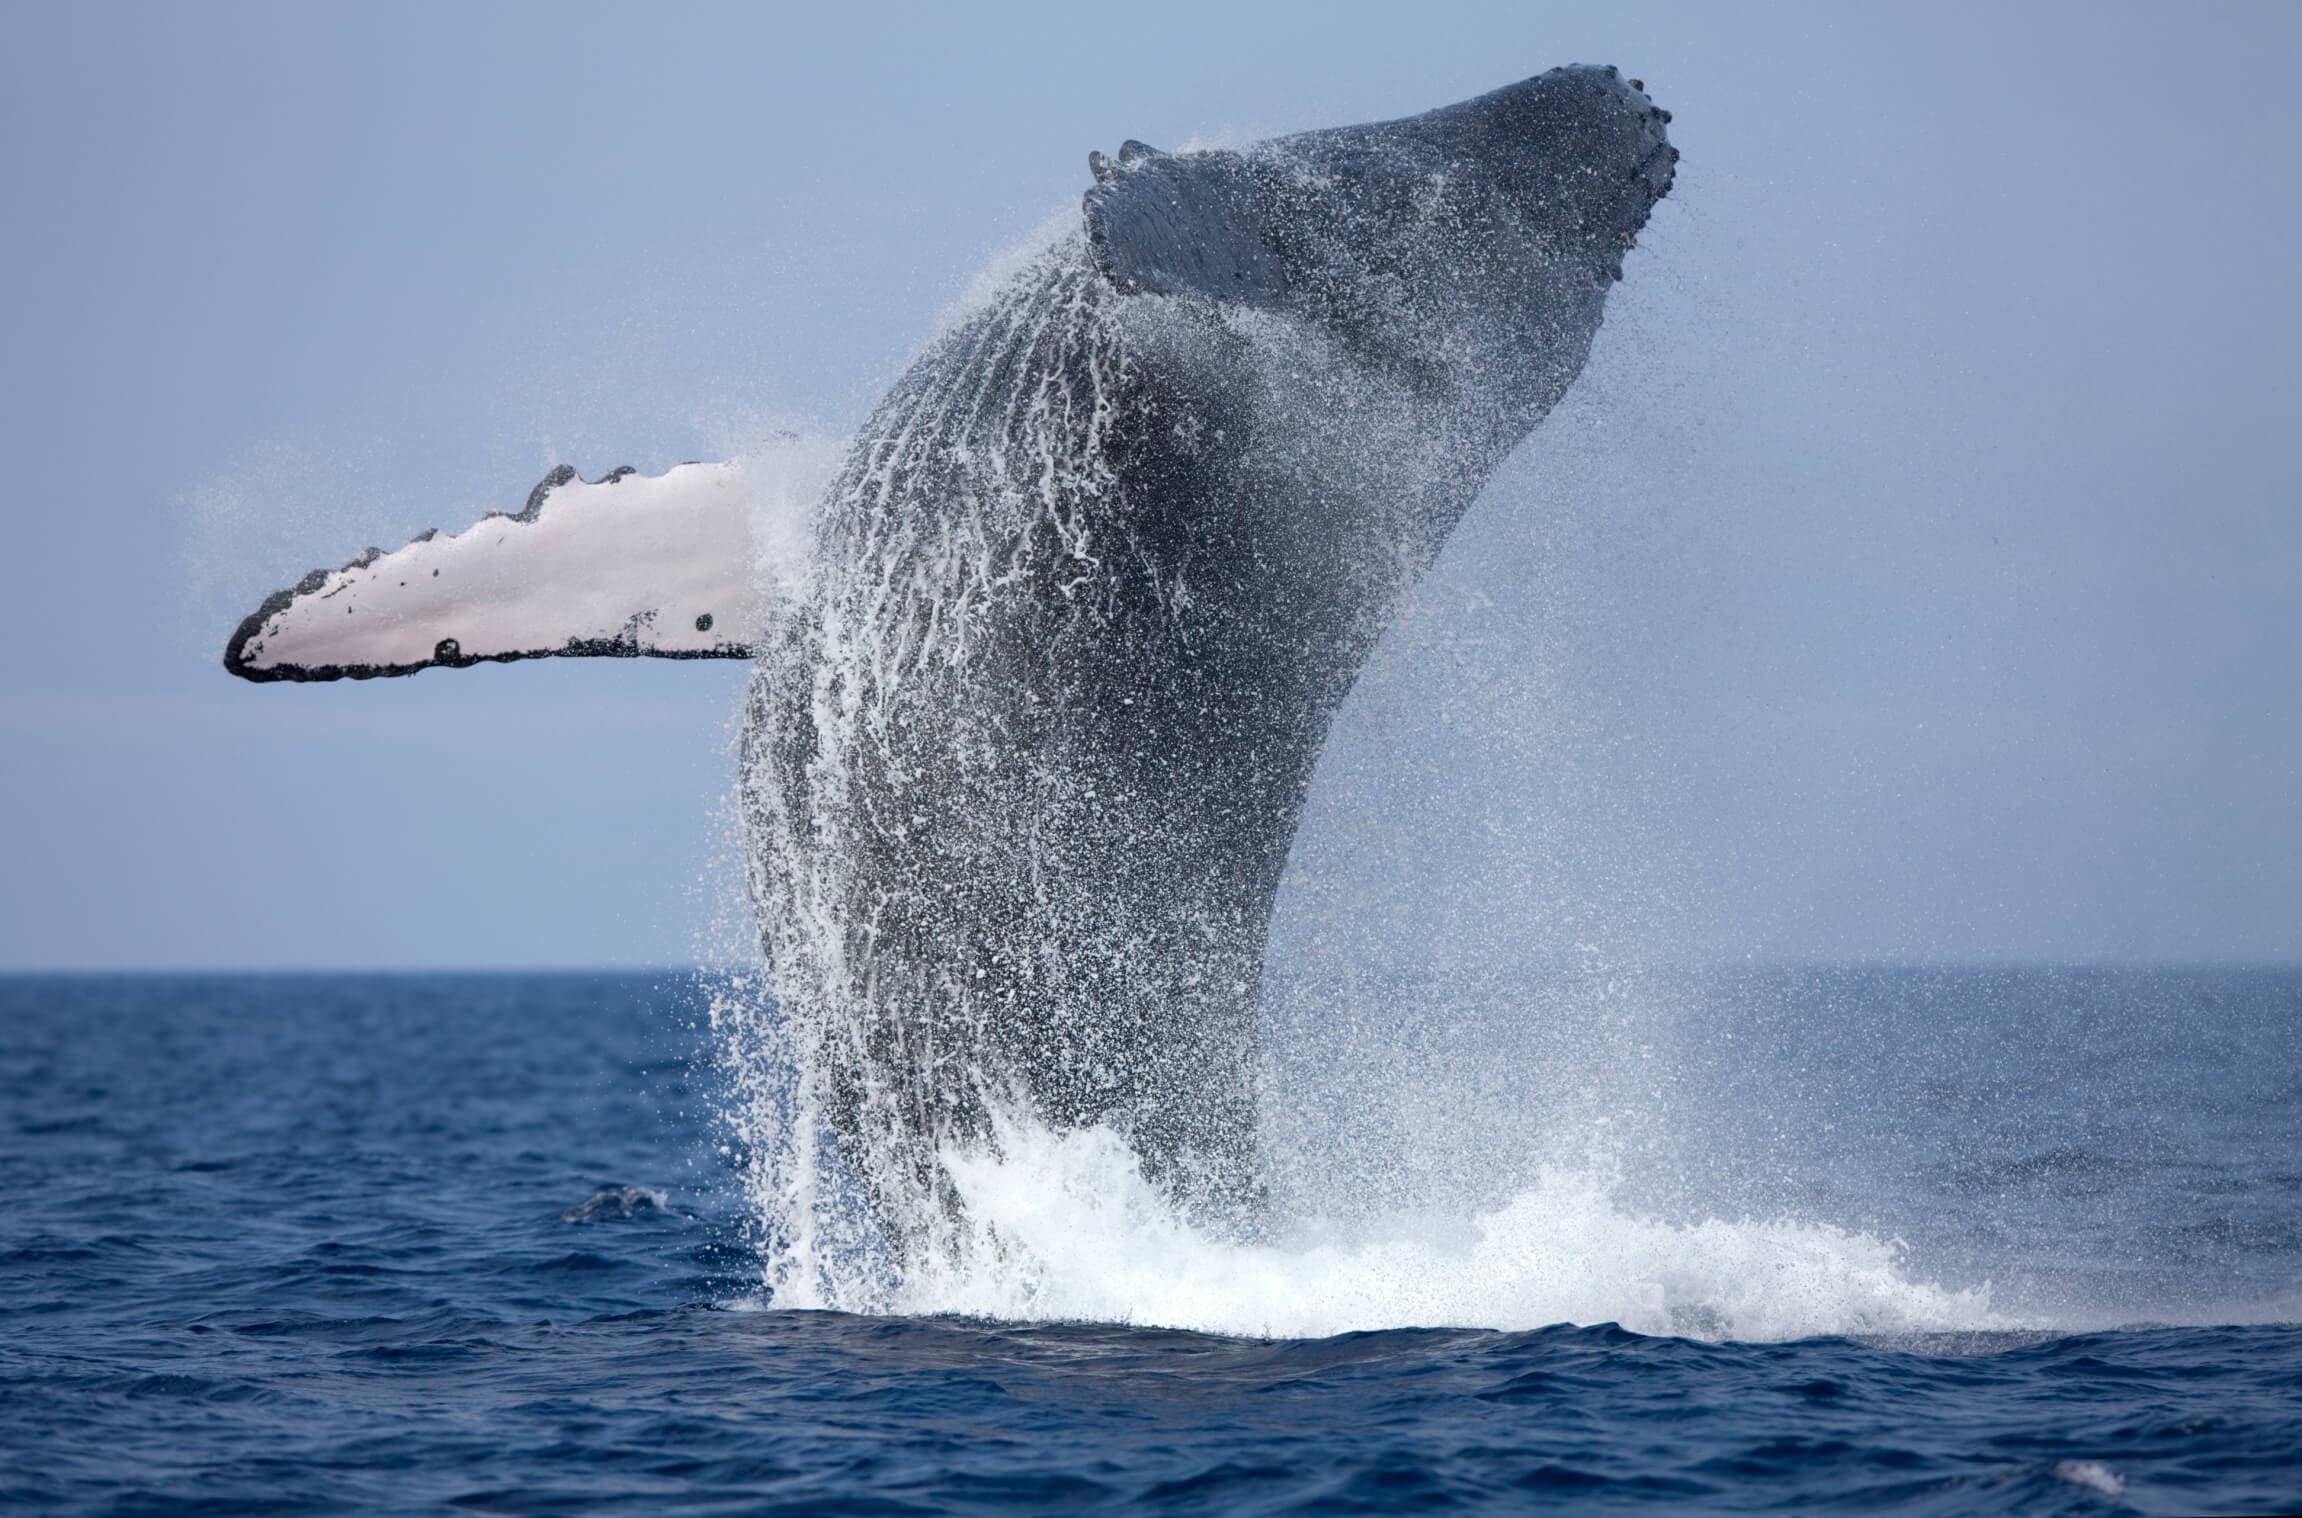 Синий кит красиво выходит из океана у залива Мирисса, южная часть Шри-Ланки.